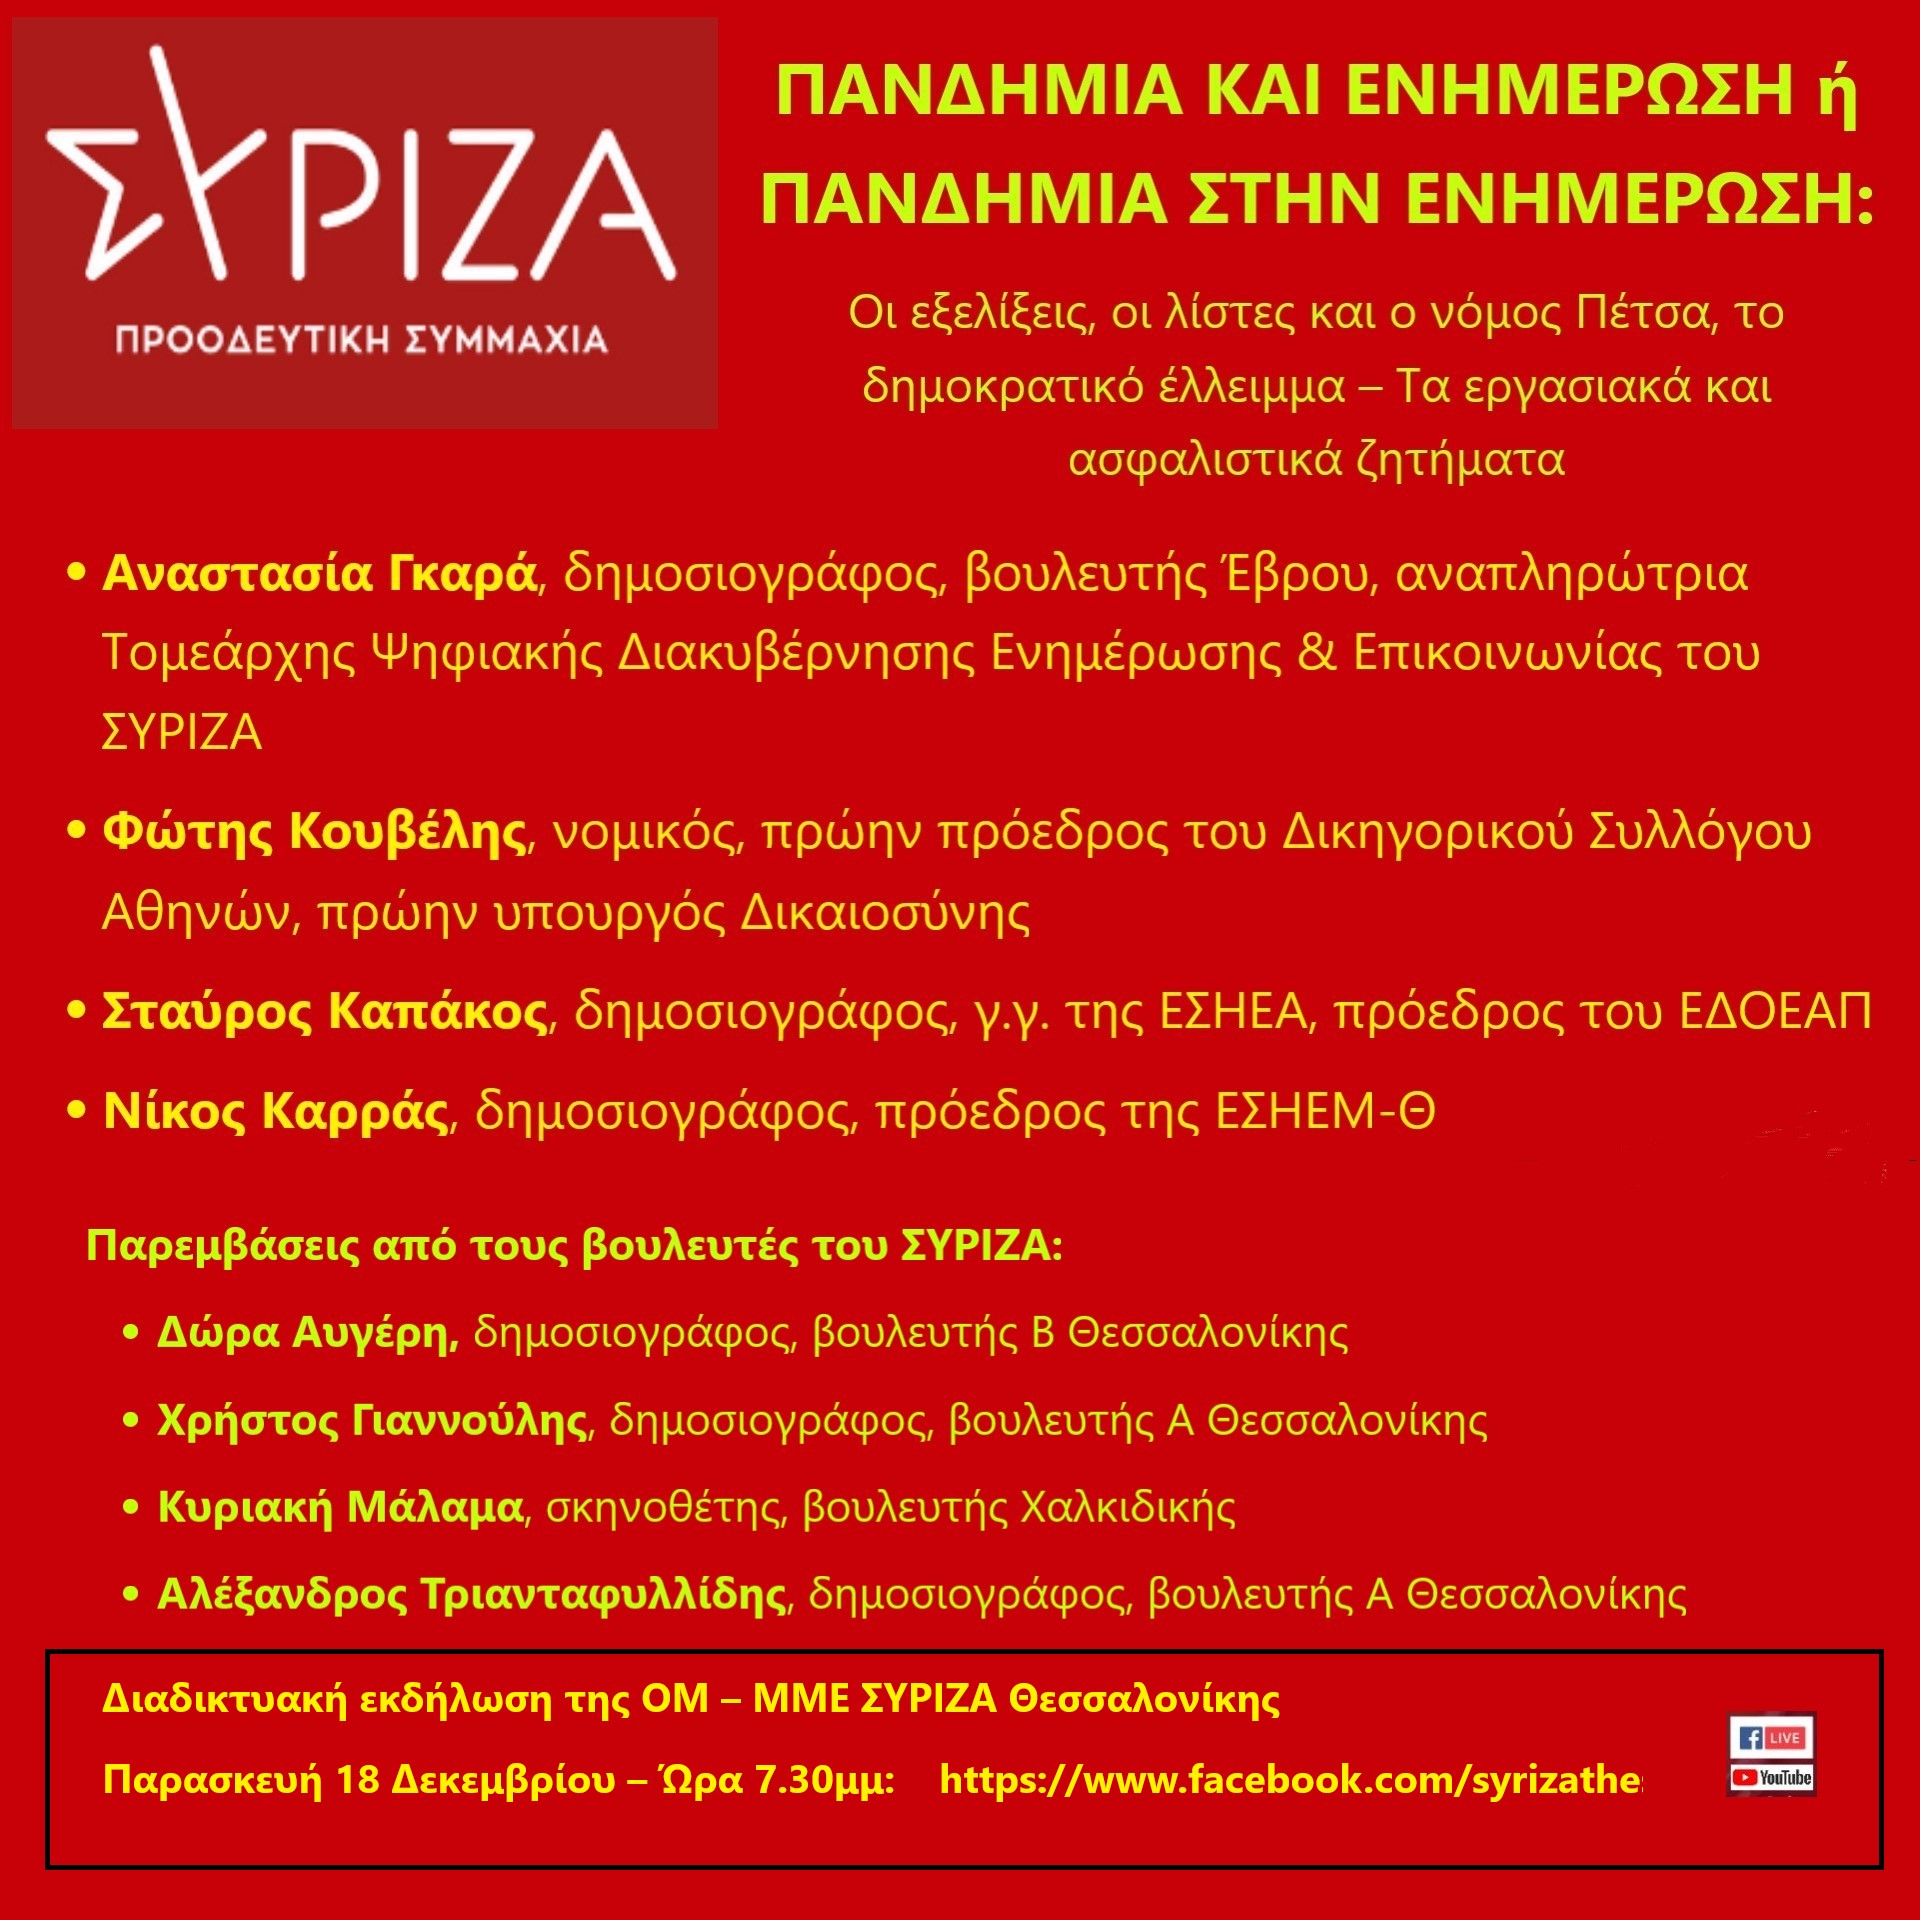 «Πανδημία και Ενημέρωση» - Διαδικτυακή ανοιχτή πολιτική εκδήλωση της ΟΜ-ΜΜΕ ΣΥΡΙΖΑ για τις εξελίξεις στον Τύπο